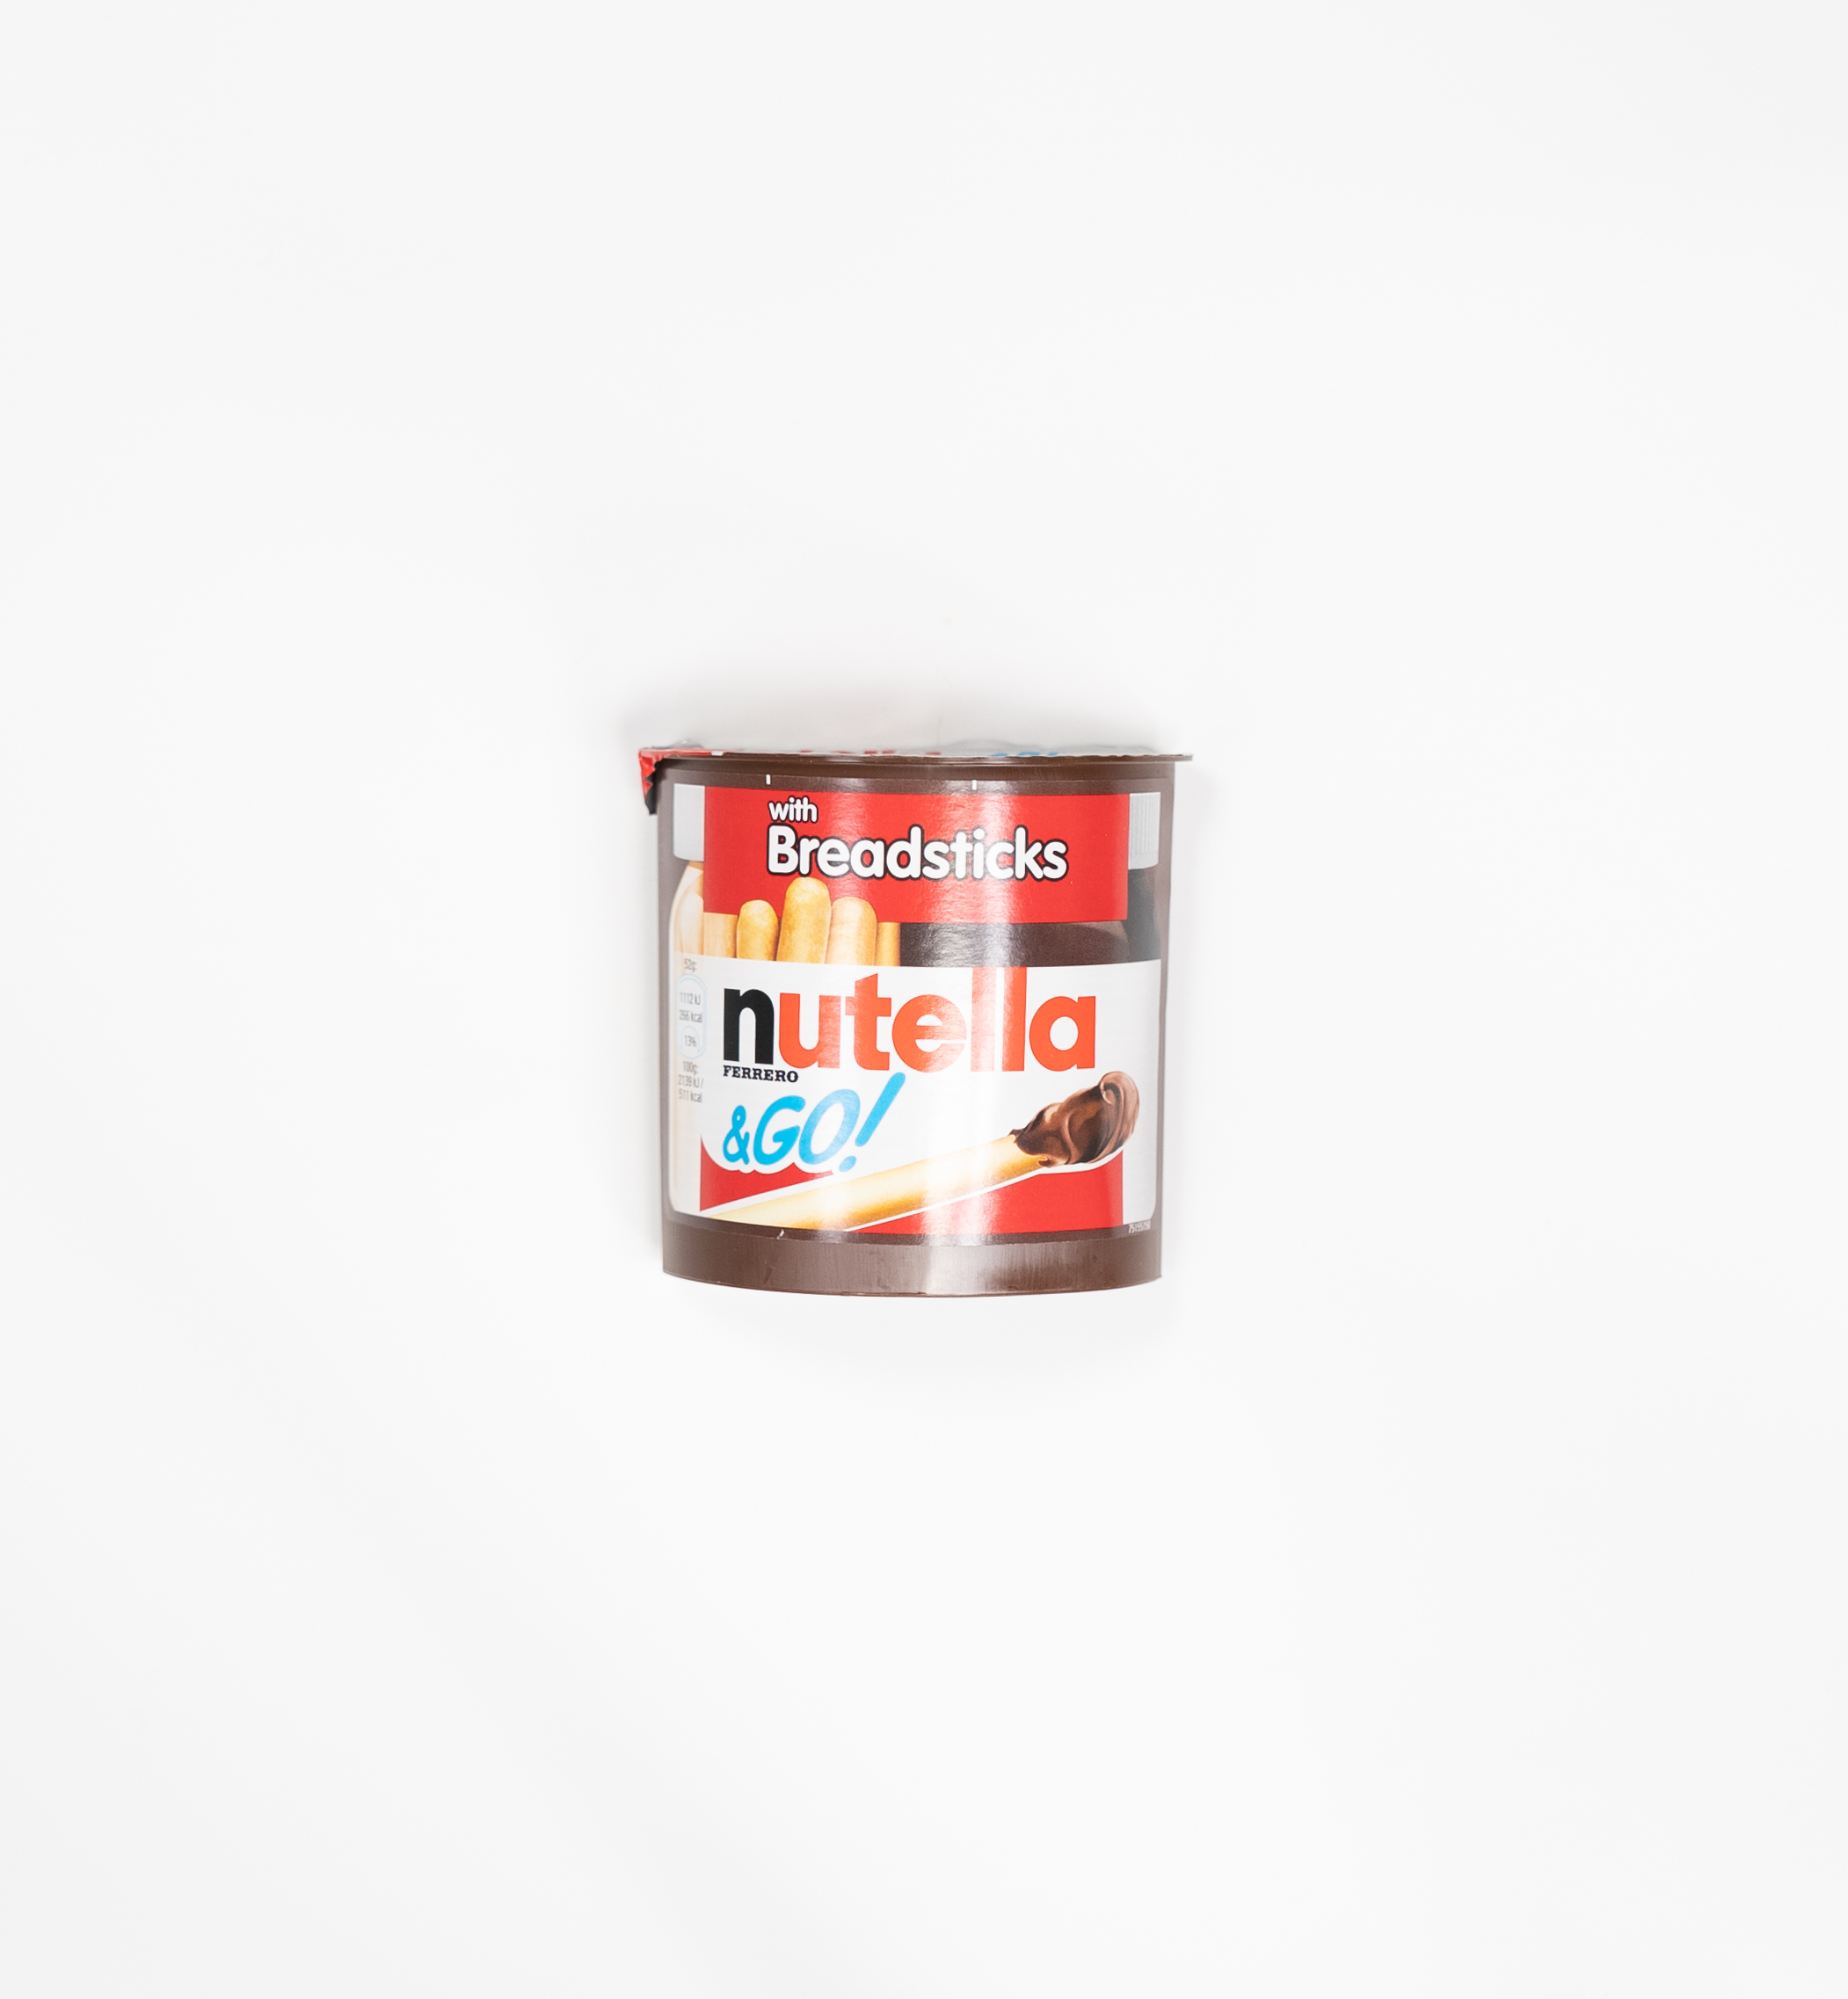 Billede af Nutella & go